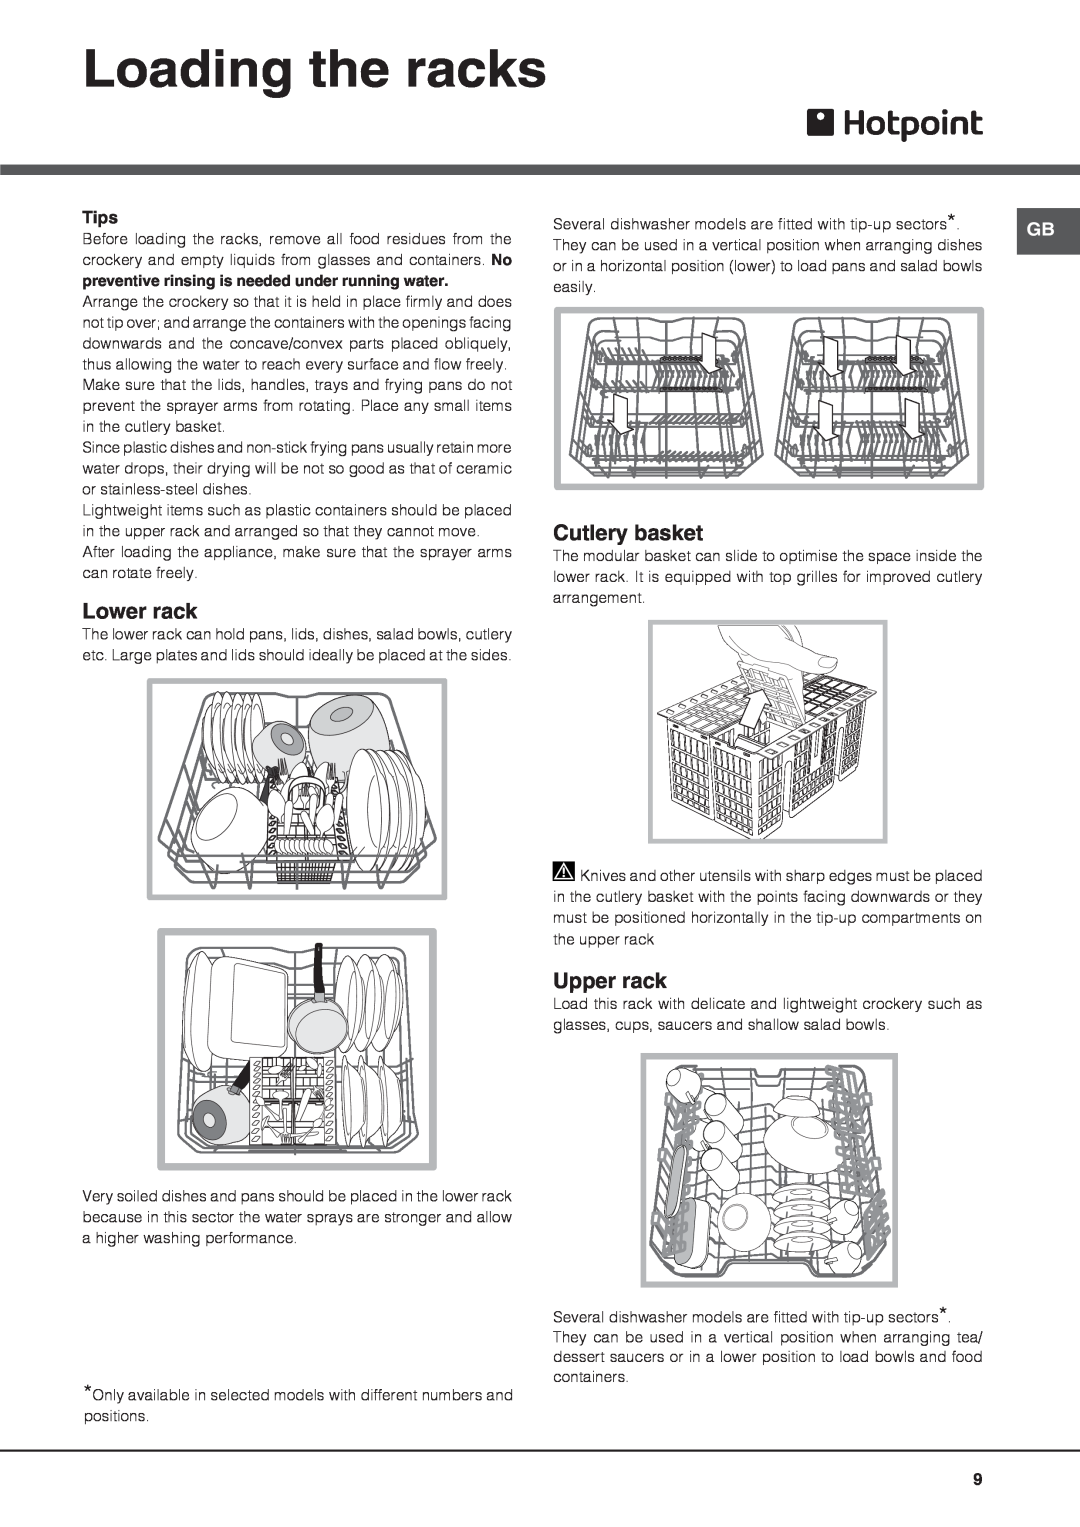 Hotpoint FDLET 31120, FDLET 31020 manual Loading the racks, Lower rack, Cutlery basket, Upper rack, Tips 